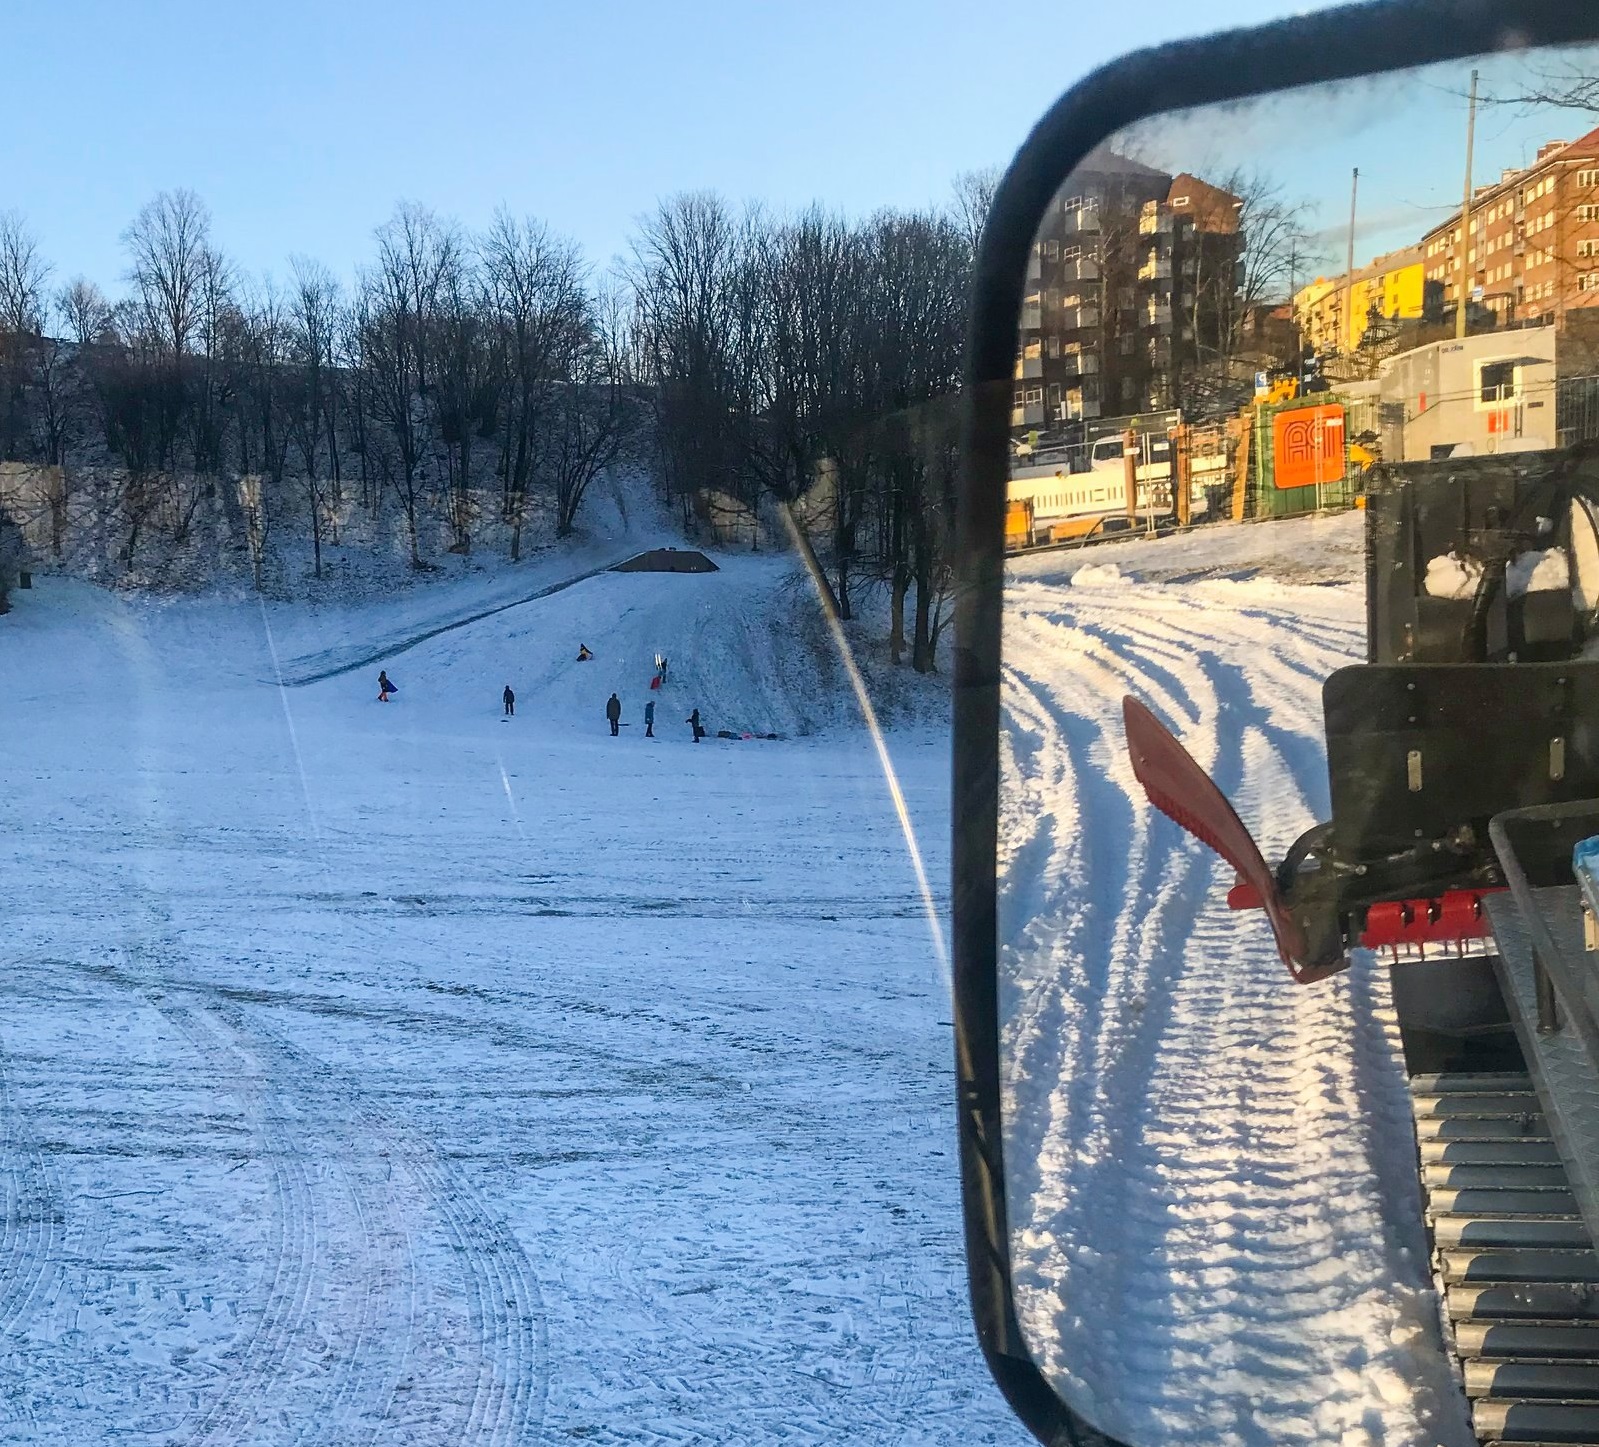 Oslo transforma parques públicos en pistas de esquí contra las limitaciones de la Covid